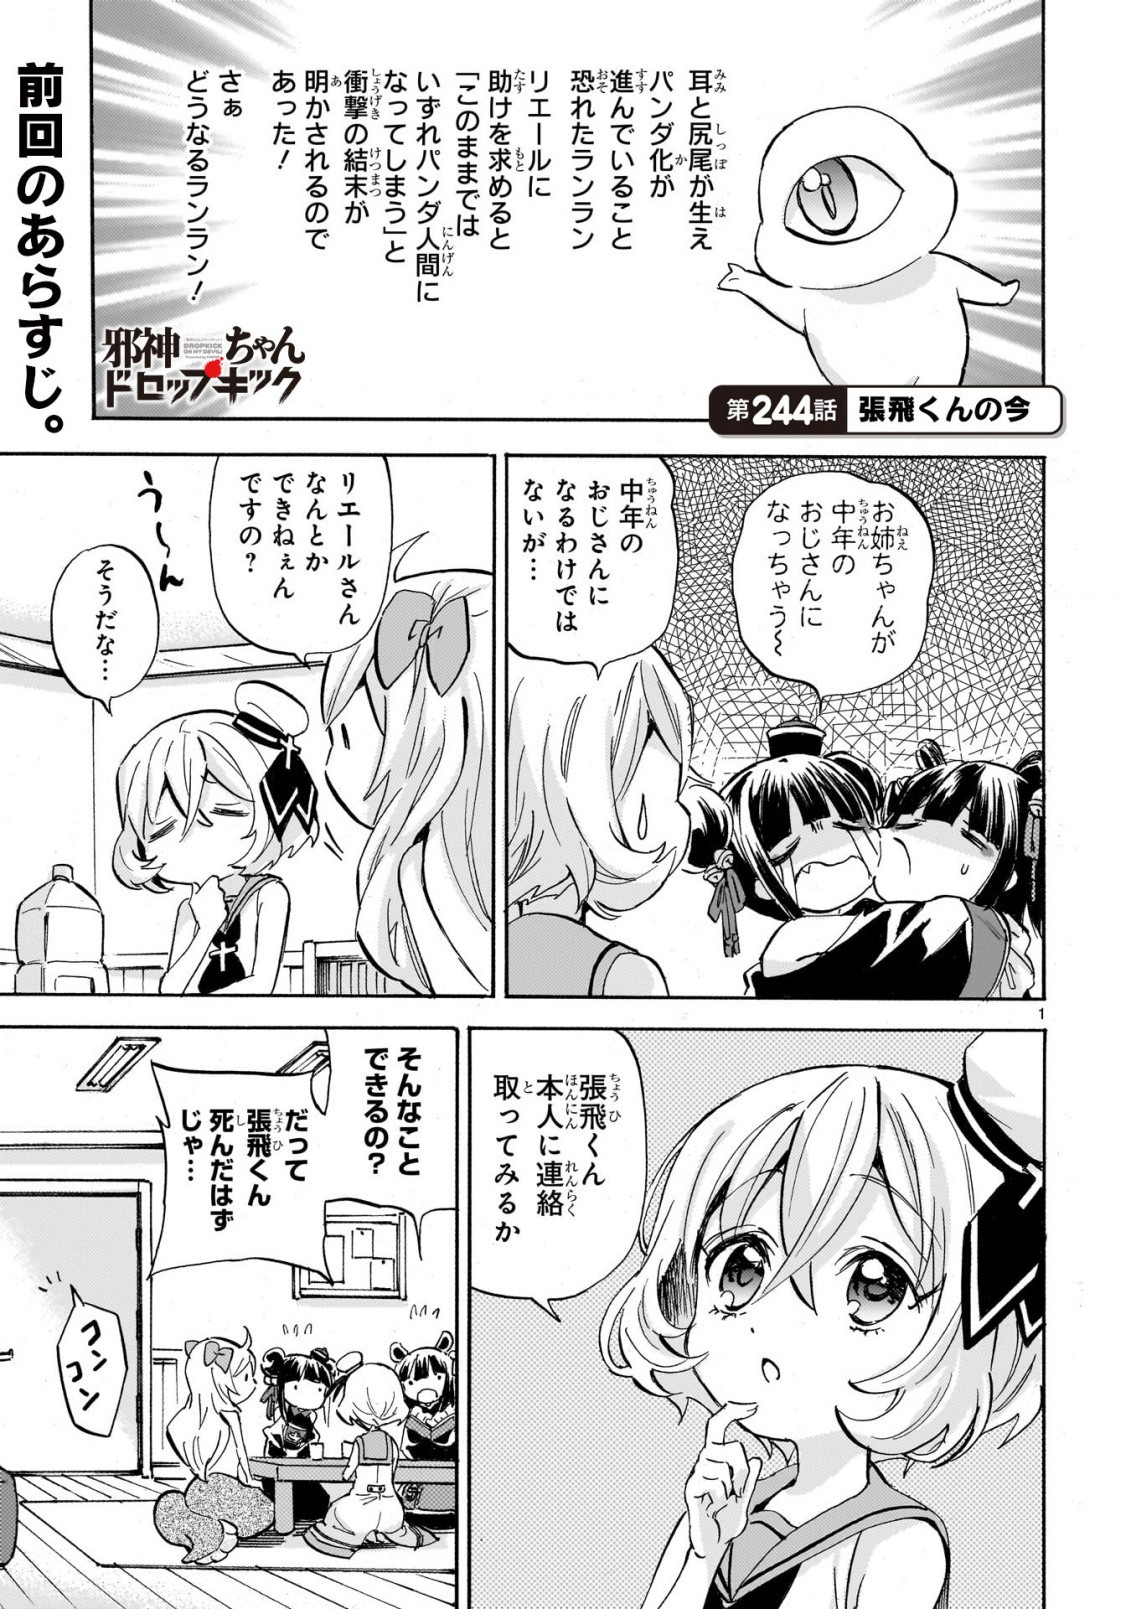 Jashin-chan Dropkick - Chapter 244 - Page 2